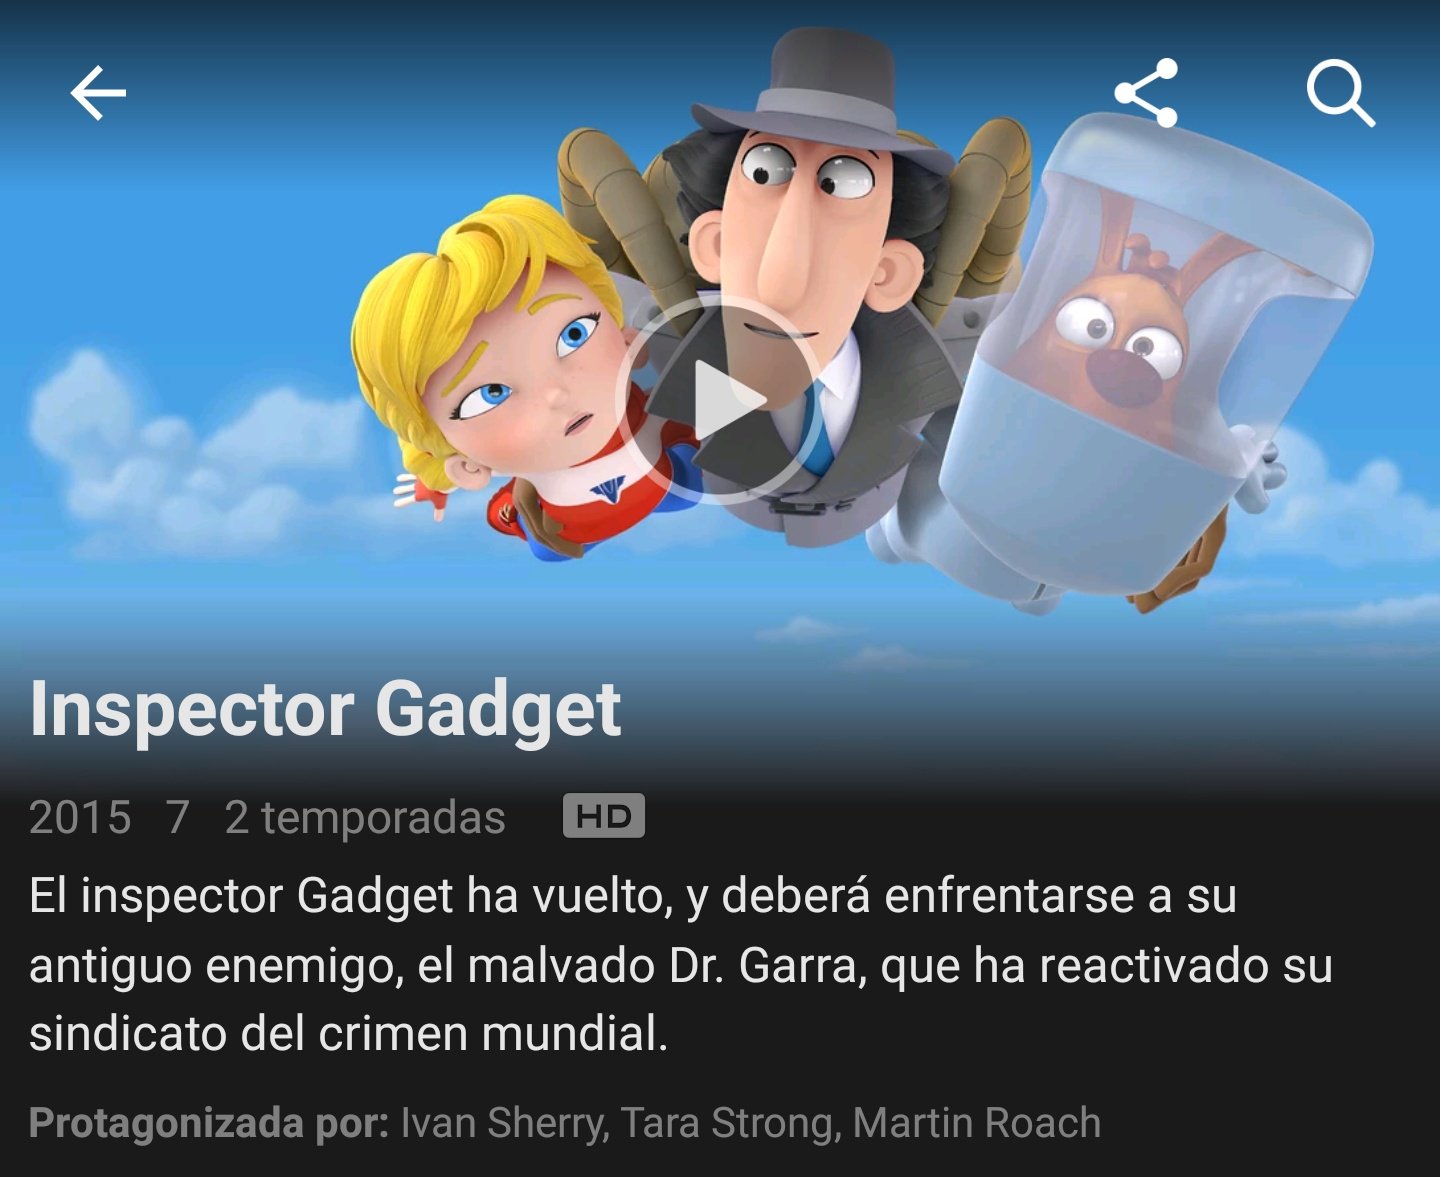 Is Inspector Gadget on Netflix?